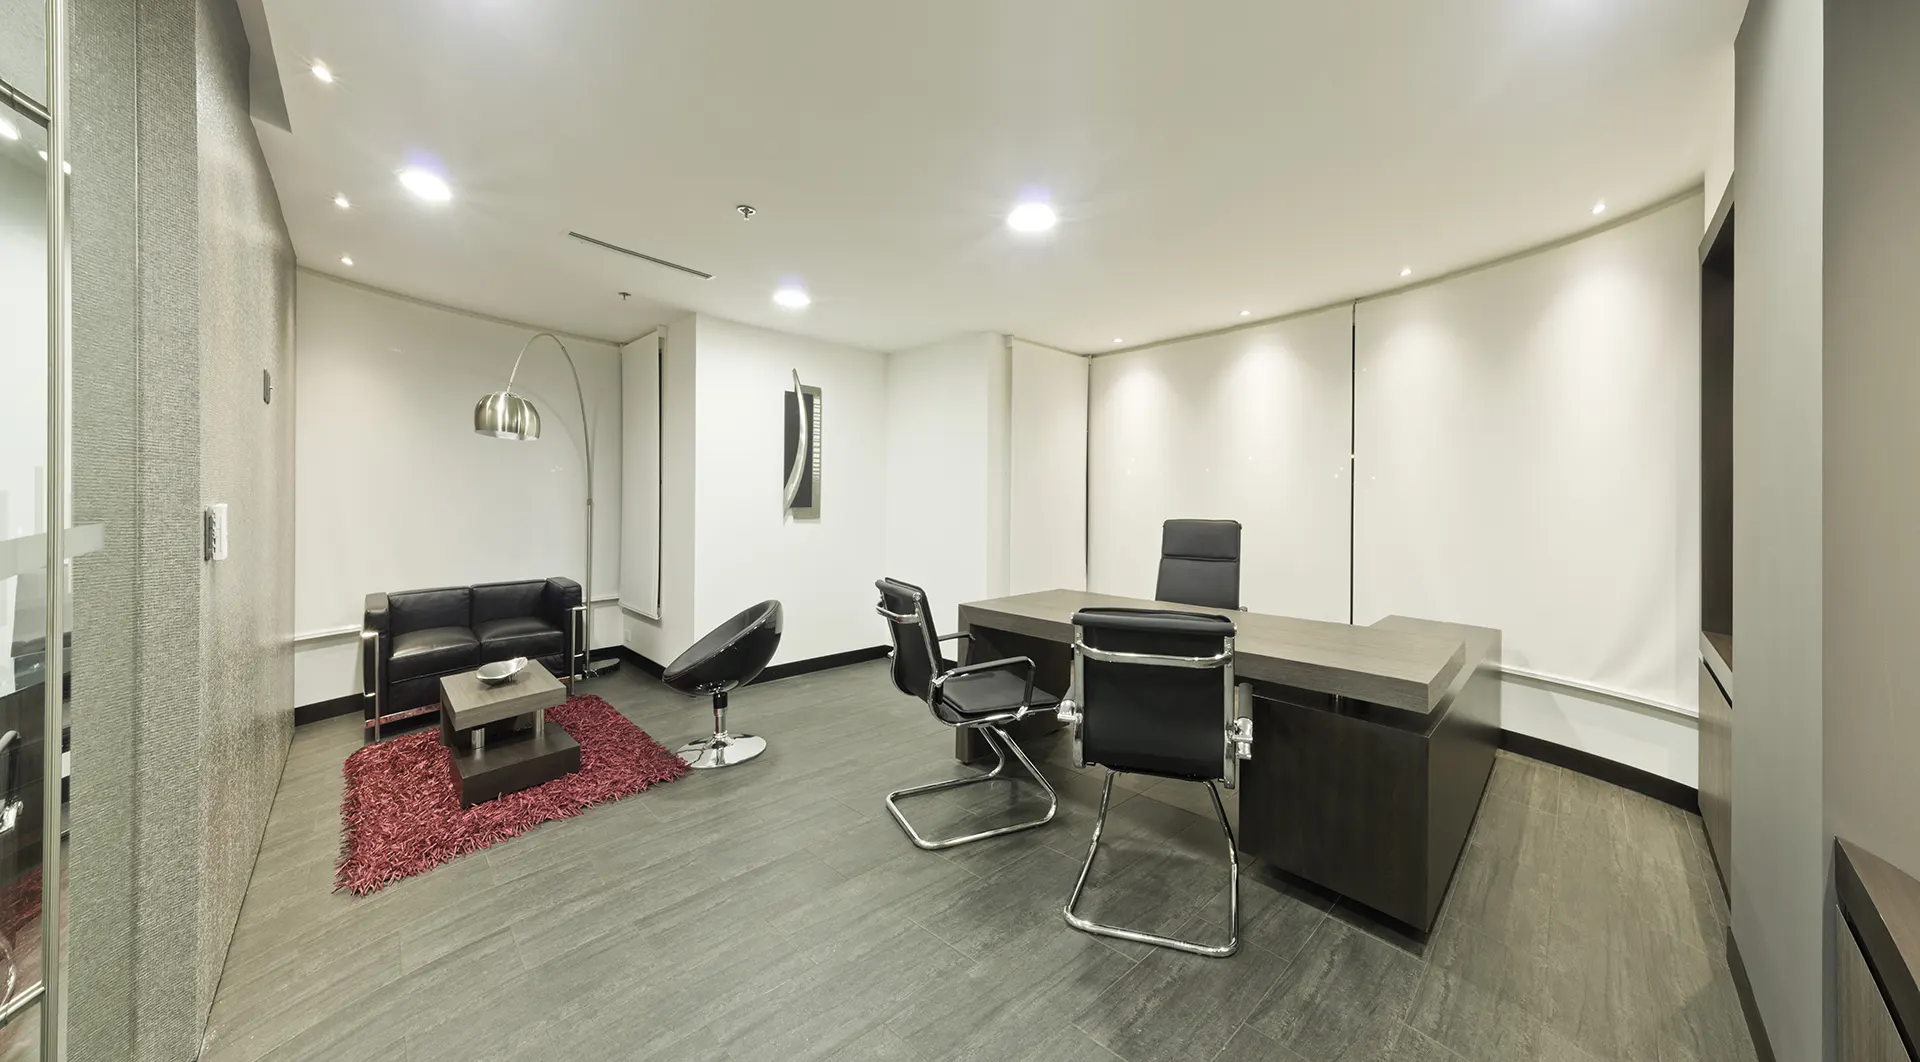 Oficina WTC - Diseño interior y remodelación de oficinas en Quito | CVD Arquitectura